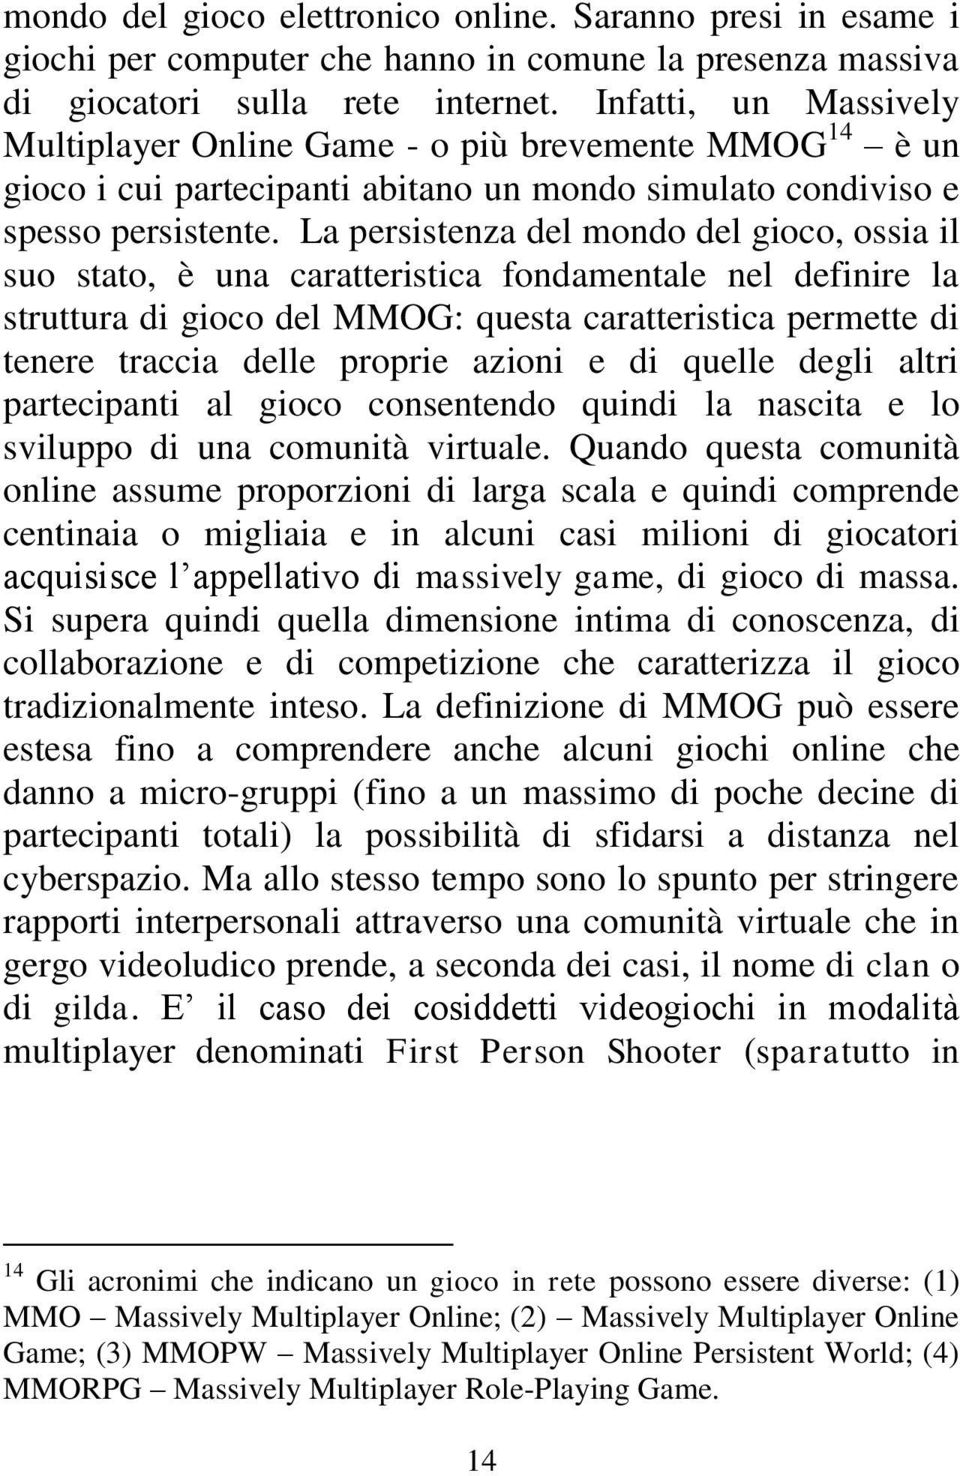 La persistenza del mondo del gioco, ossia il suo stato, è una caratteristica fondamentale nel definire la struttura di gioco del MMOG: questa caratteristica permette di tenere traccia delle proprie